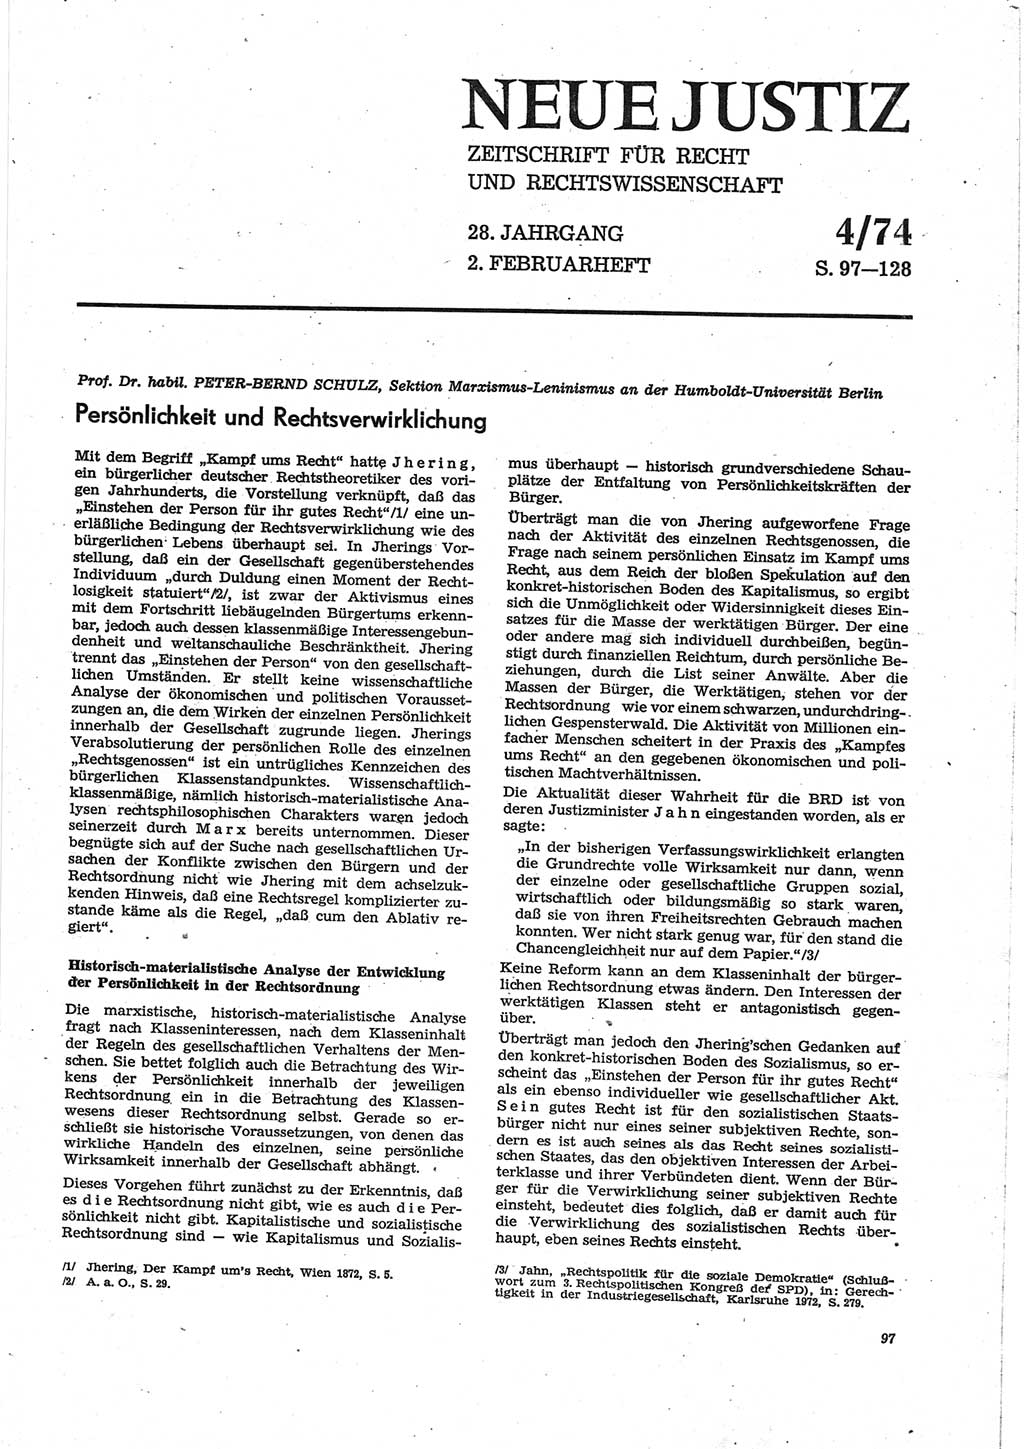 Neue Justiz (NJ), Zeitschrift für Recht und Rechtswissenschaft [Deutsche Demokratische Republik (DDR)], 28. Jahrgang 1974, Seite 97 (NJ DDR 1974, S. 97)